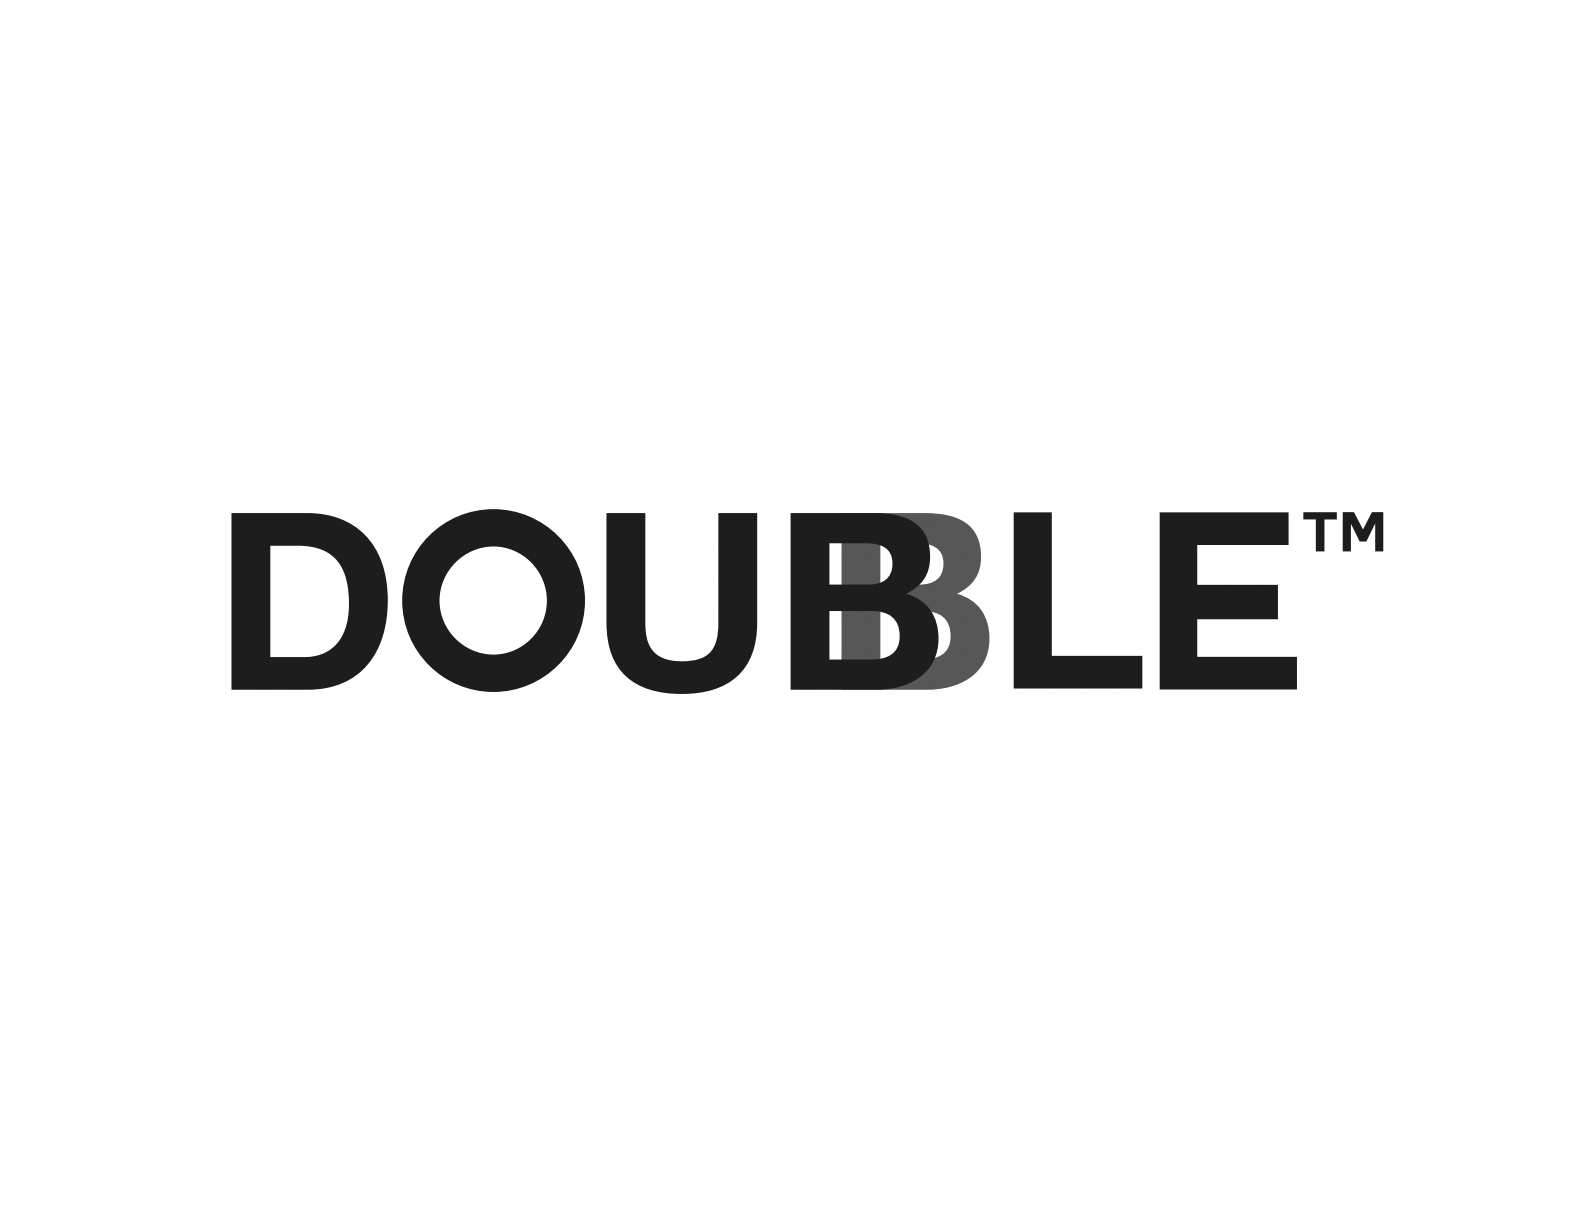 Doubble.my